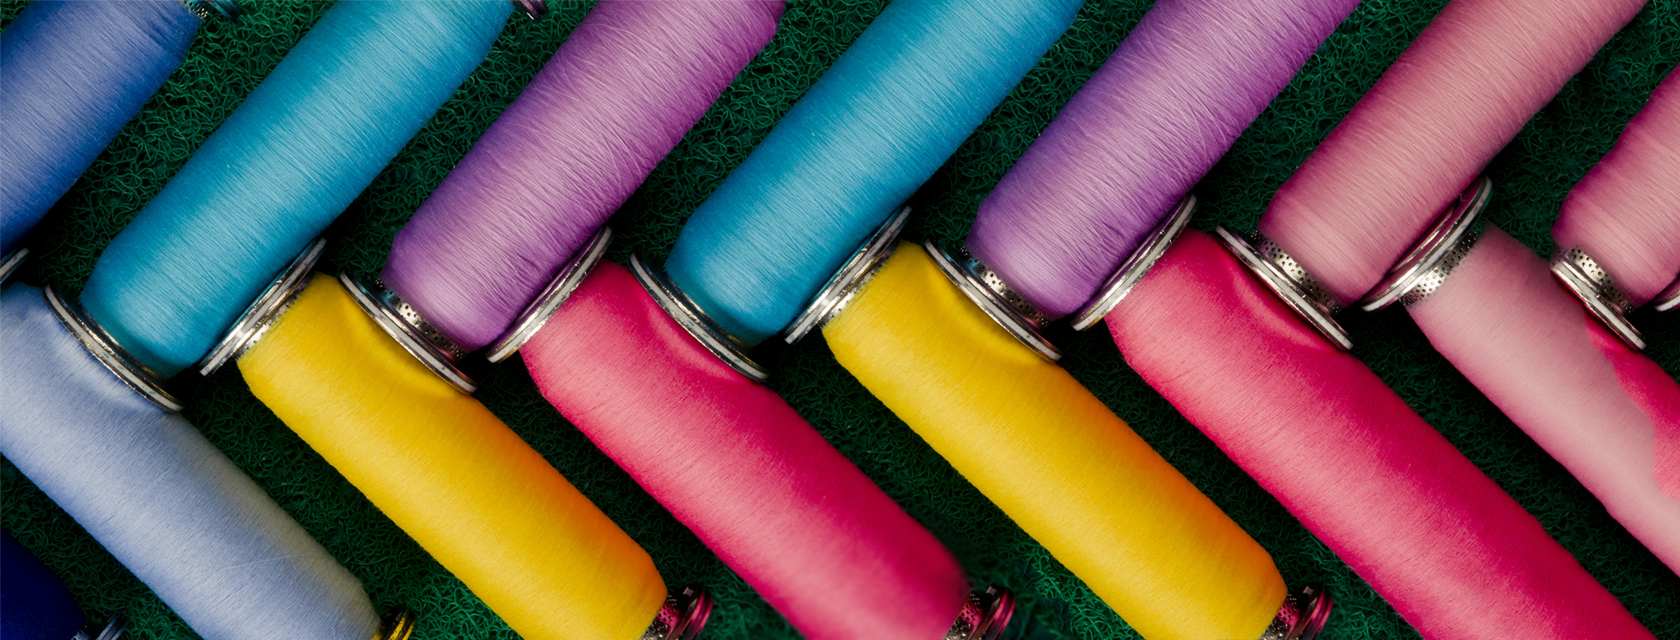 成功开发超高支纯棉300S纱线、色织面料，纱线细如蛛丝，面料薄如蝉翼，品质及水平均达到国际领先水平，整个纺纱技术及超高支面料的发展。